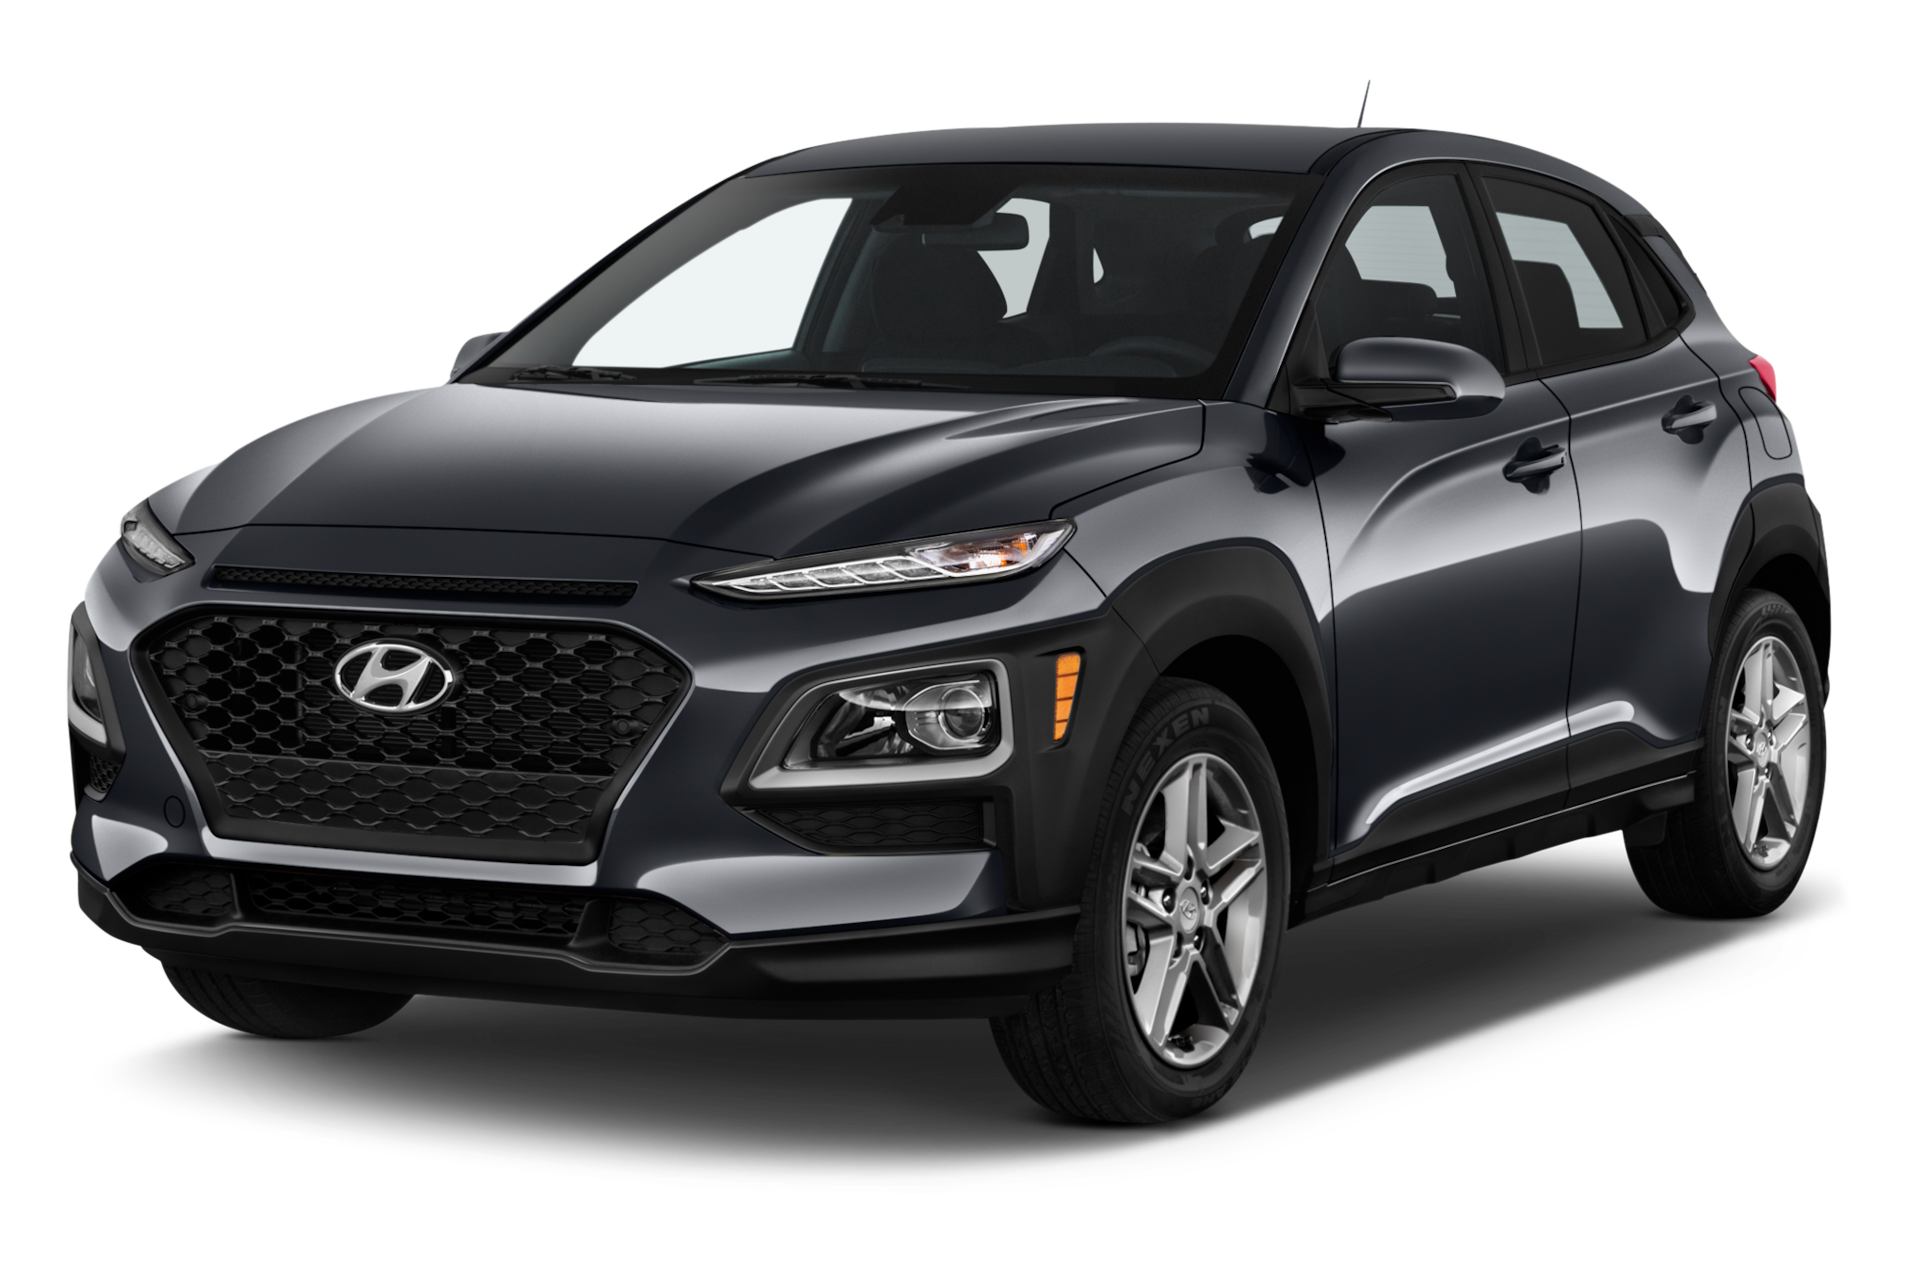 2020 Hyundai Kona Prices, Reviews, and Photos - MotorTrend